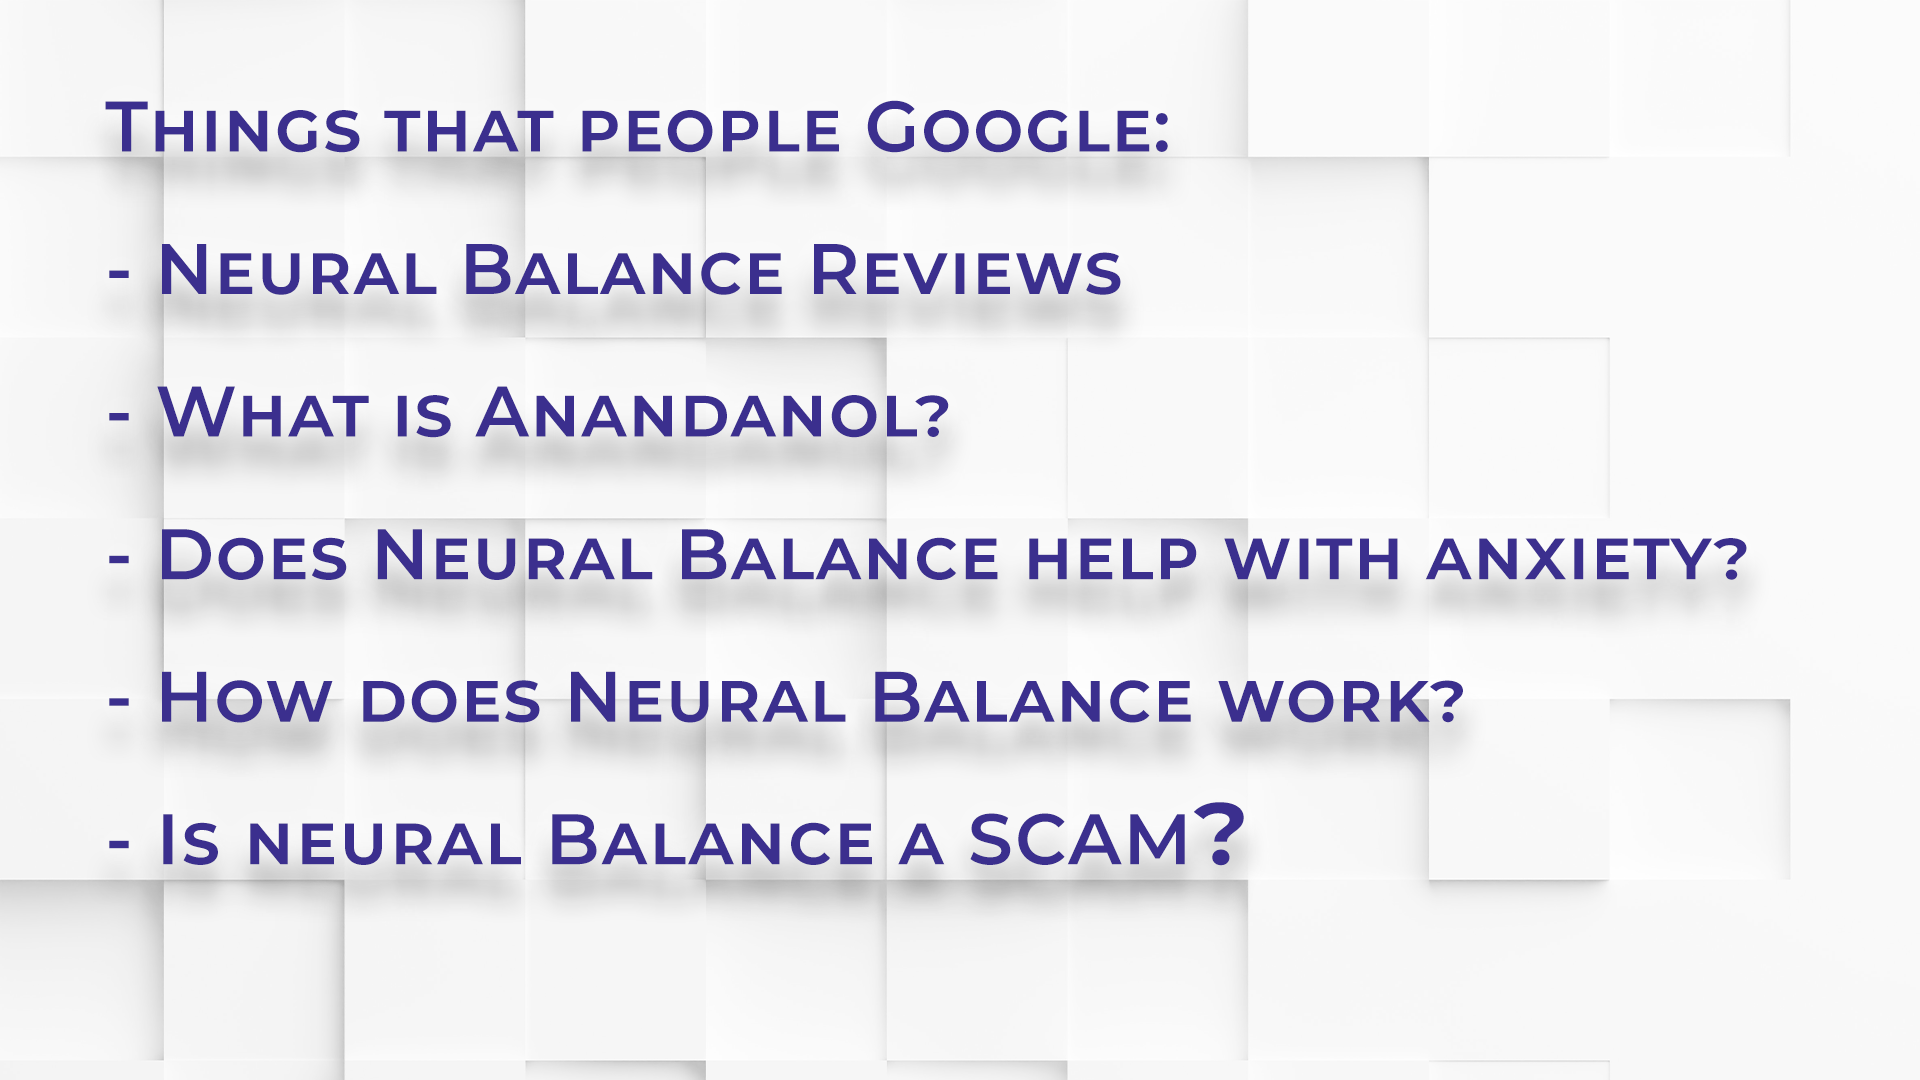 Is Neural Balance a Scam?